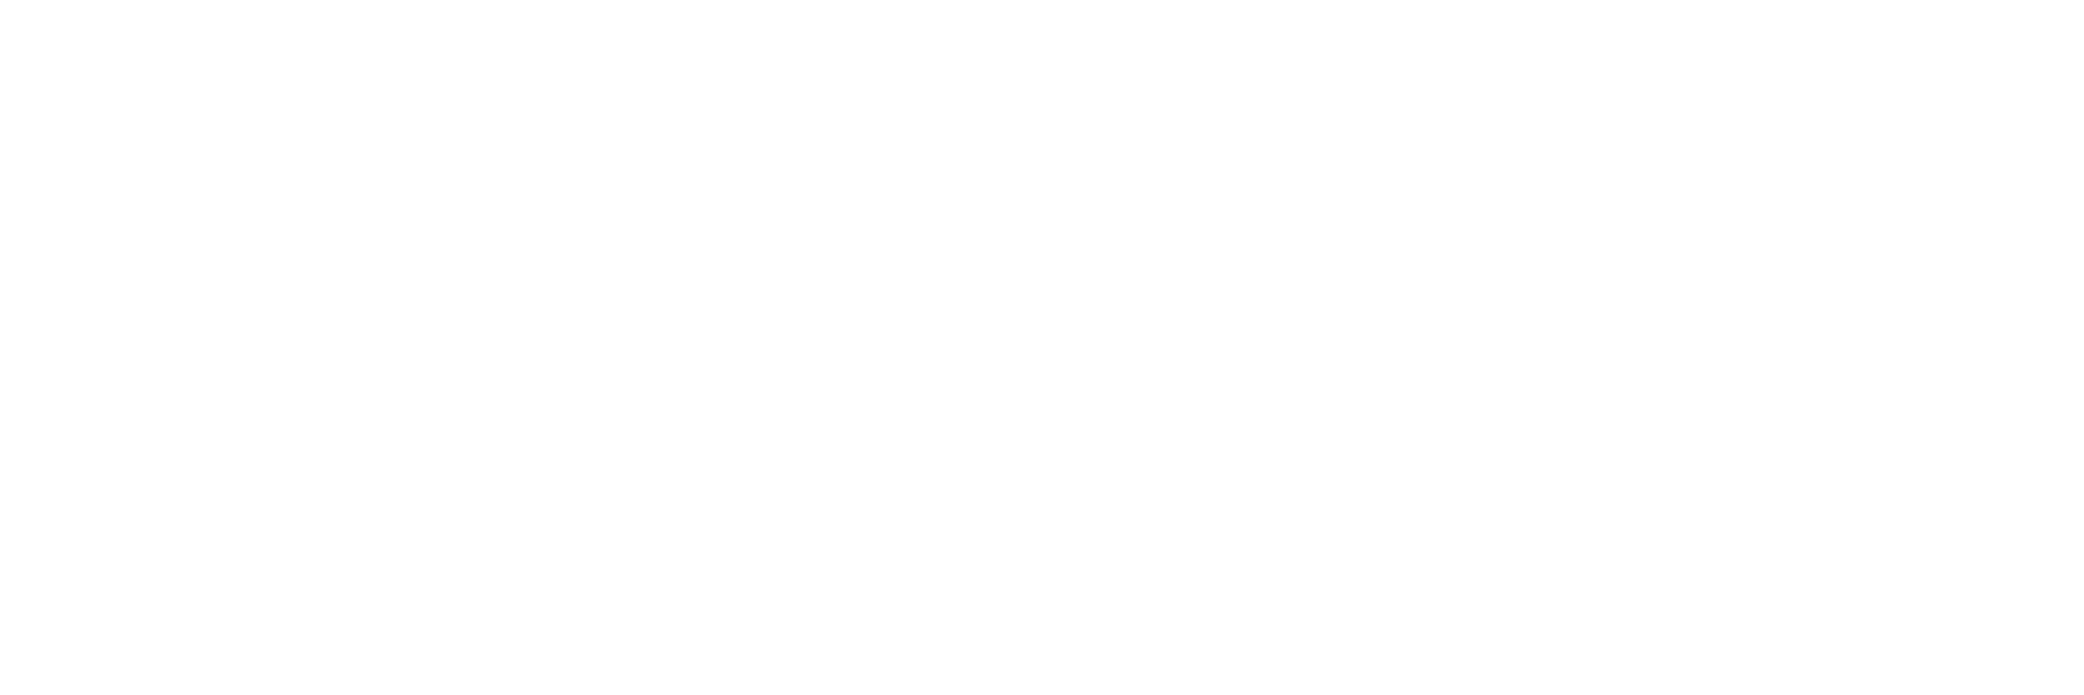 PixelOMedia logo in white